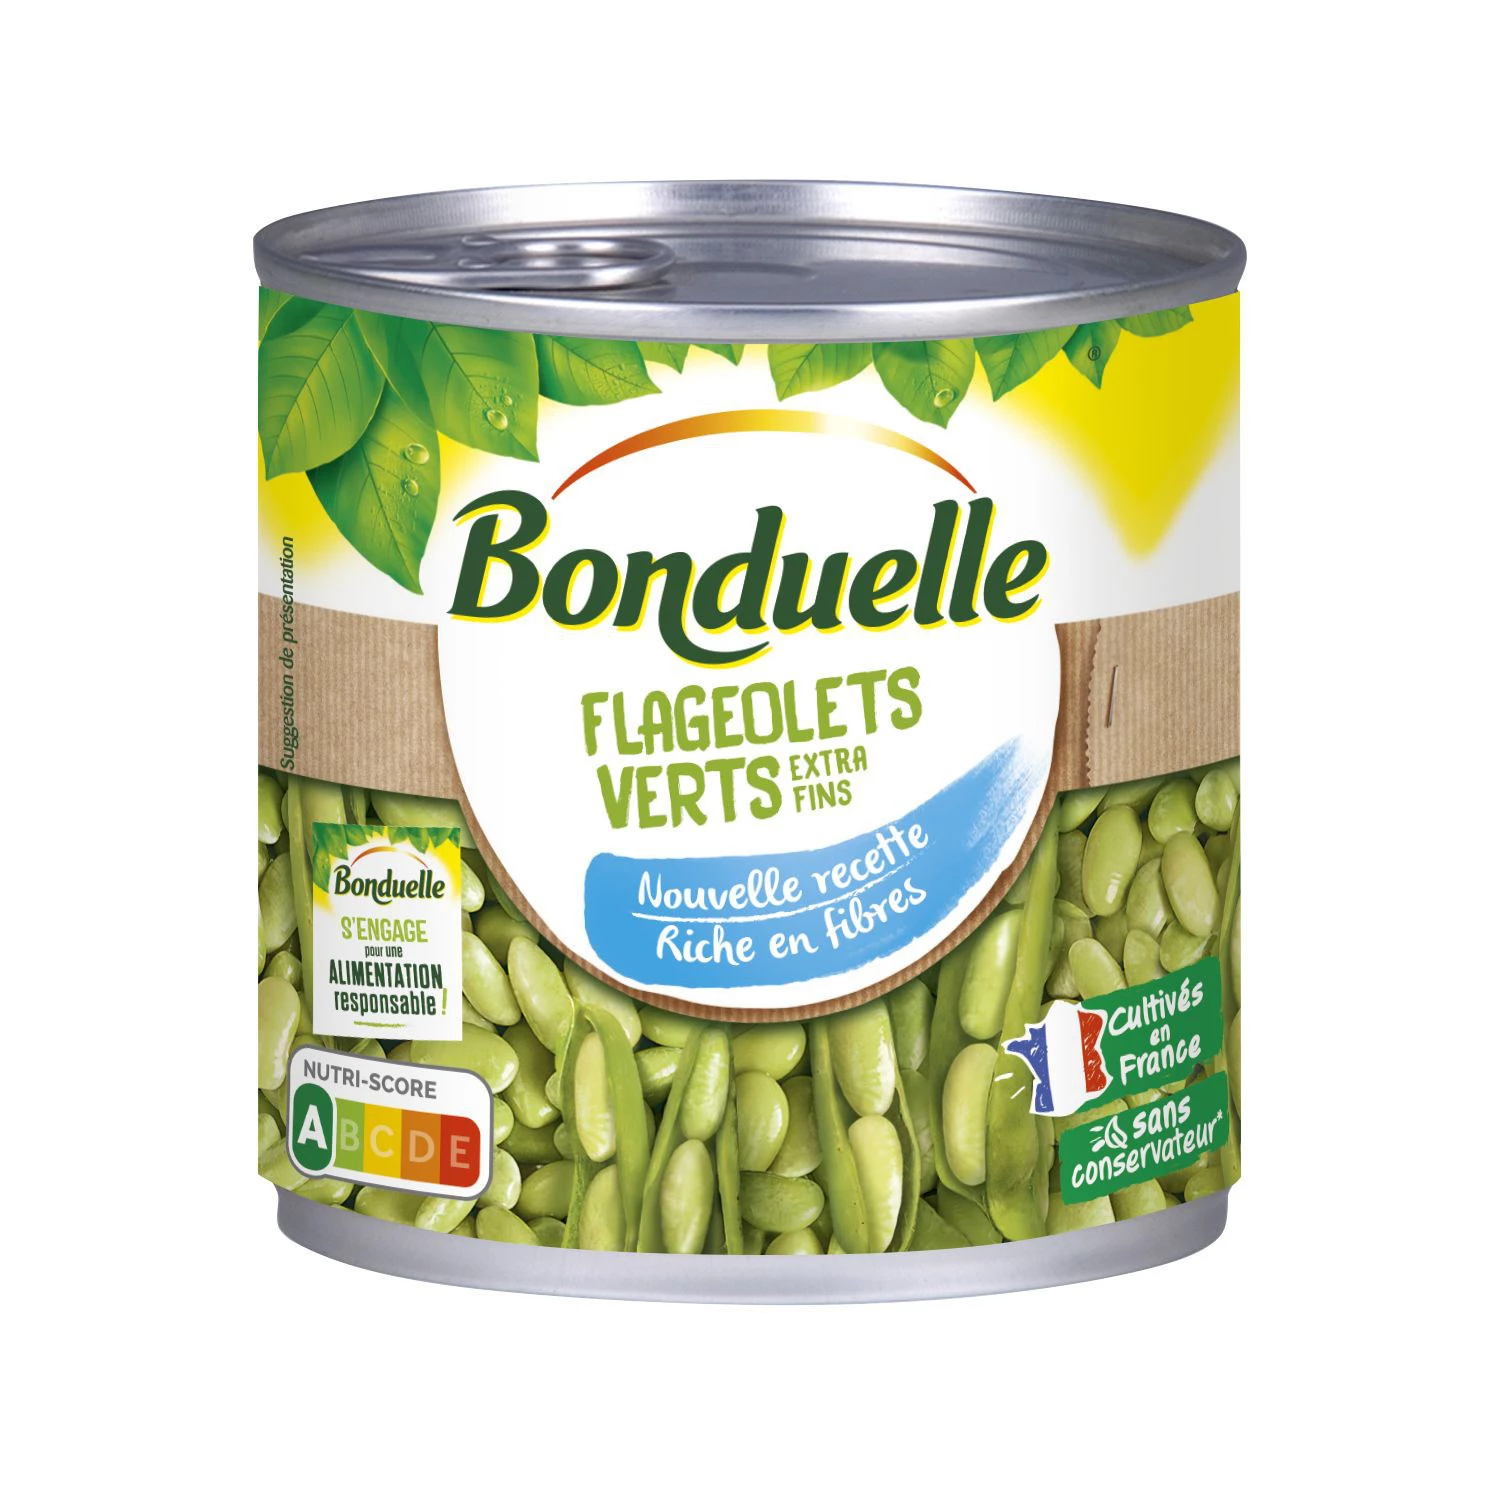 Bonduelle Kidney beans (flageolets) 265g